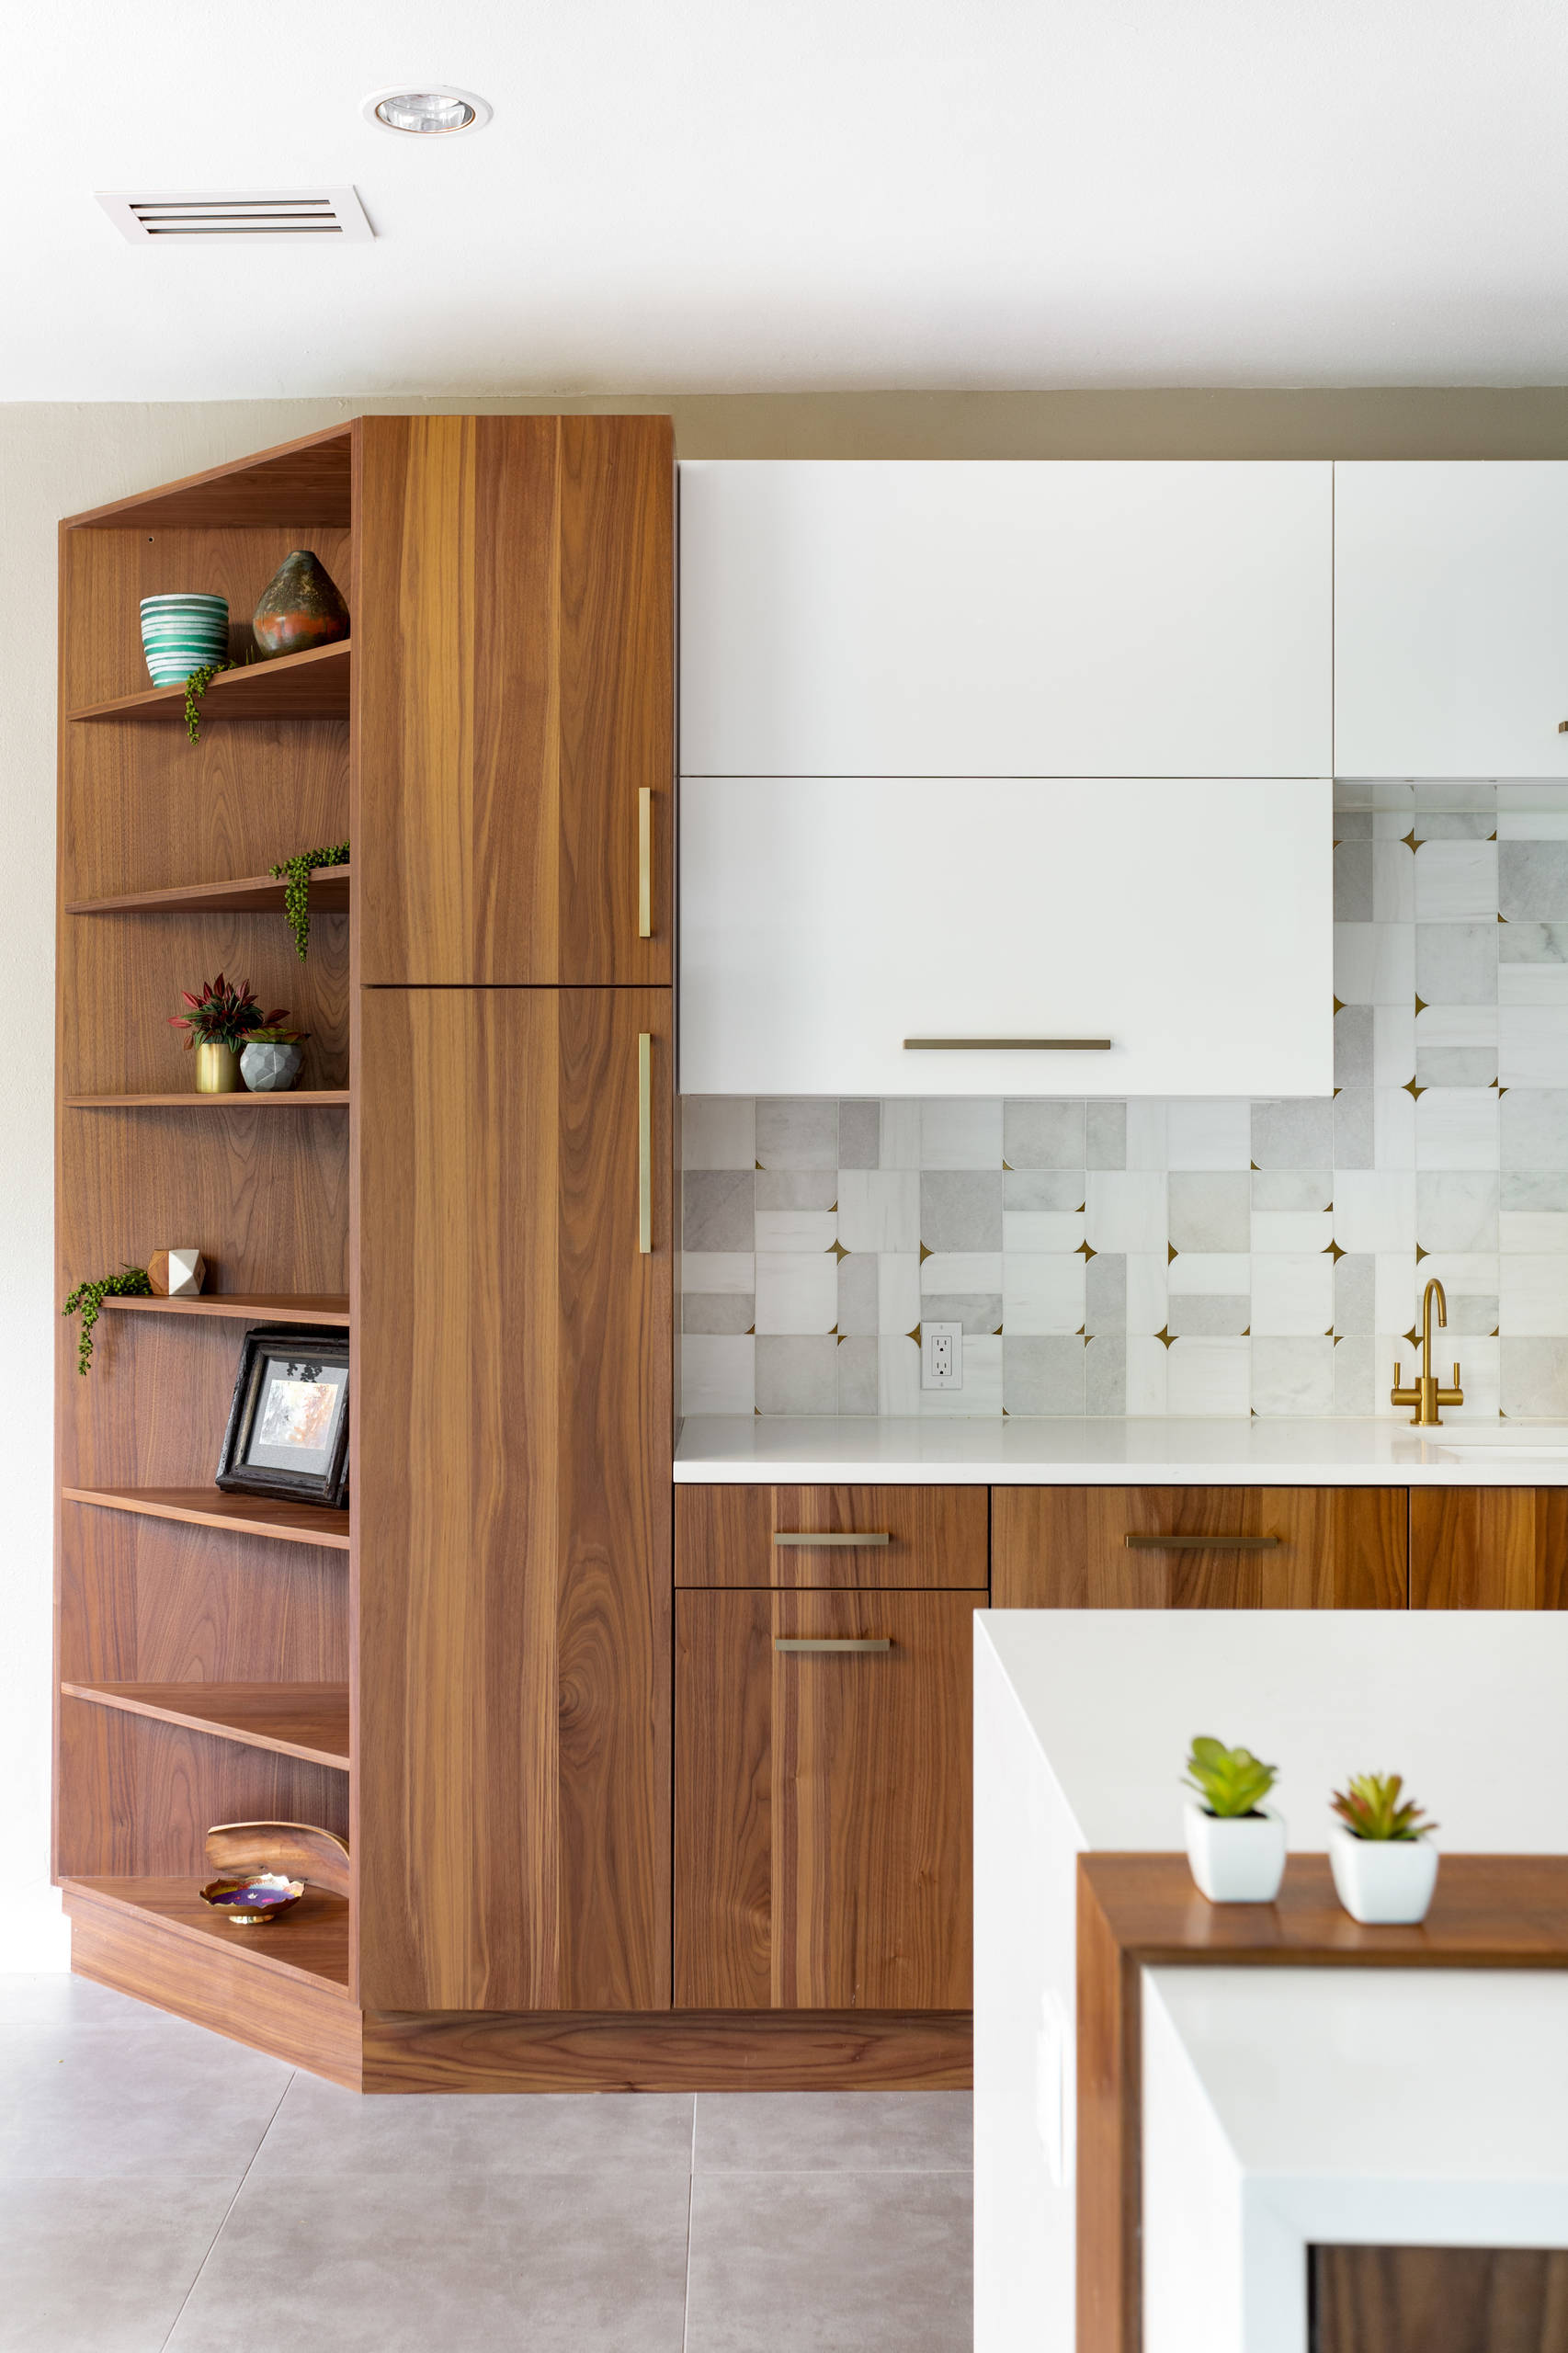 Beige Kitchen: Get Inspired by Our Design Ideas — Nordiska Kök